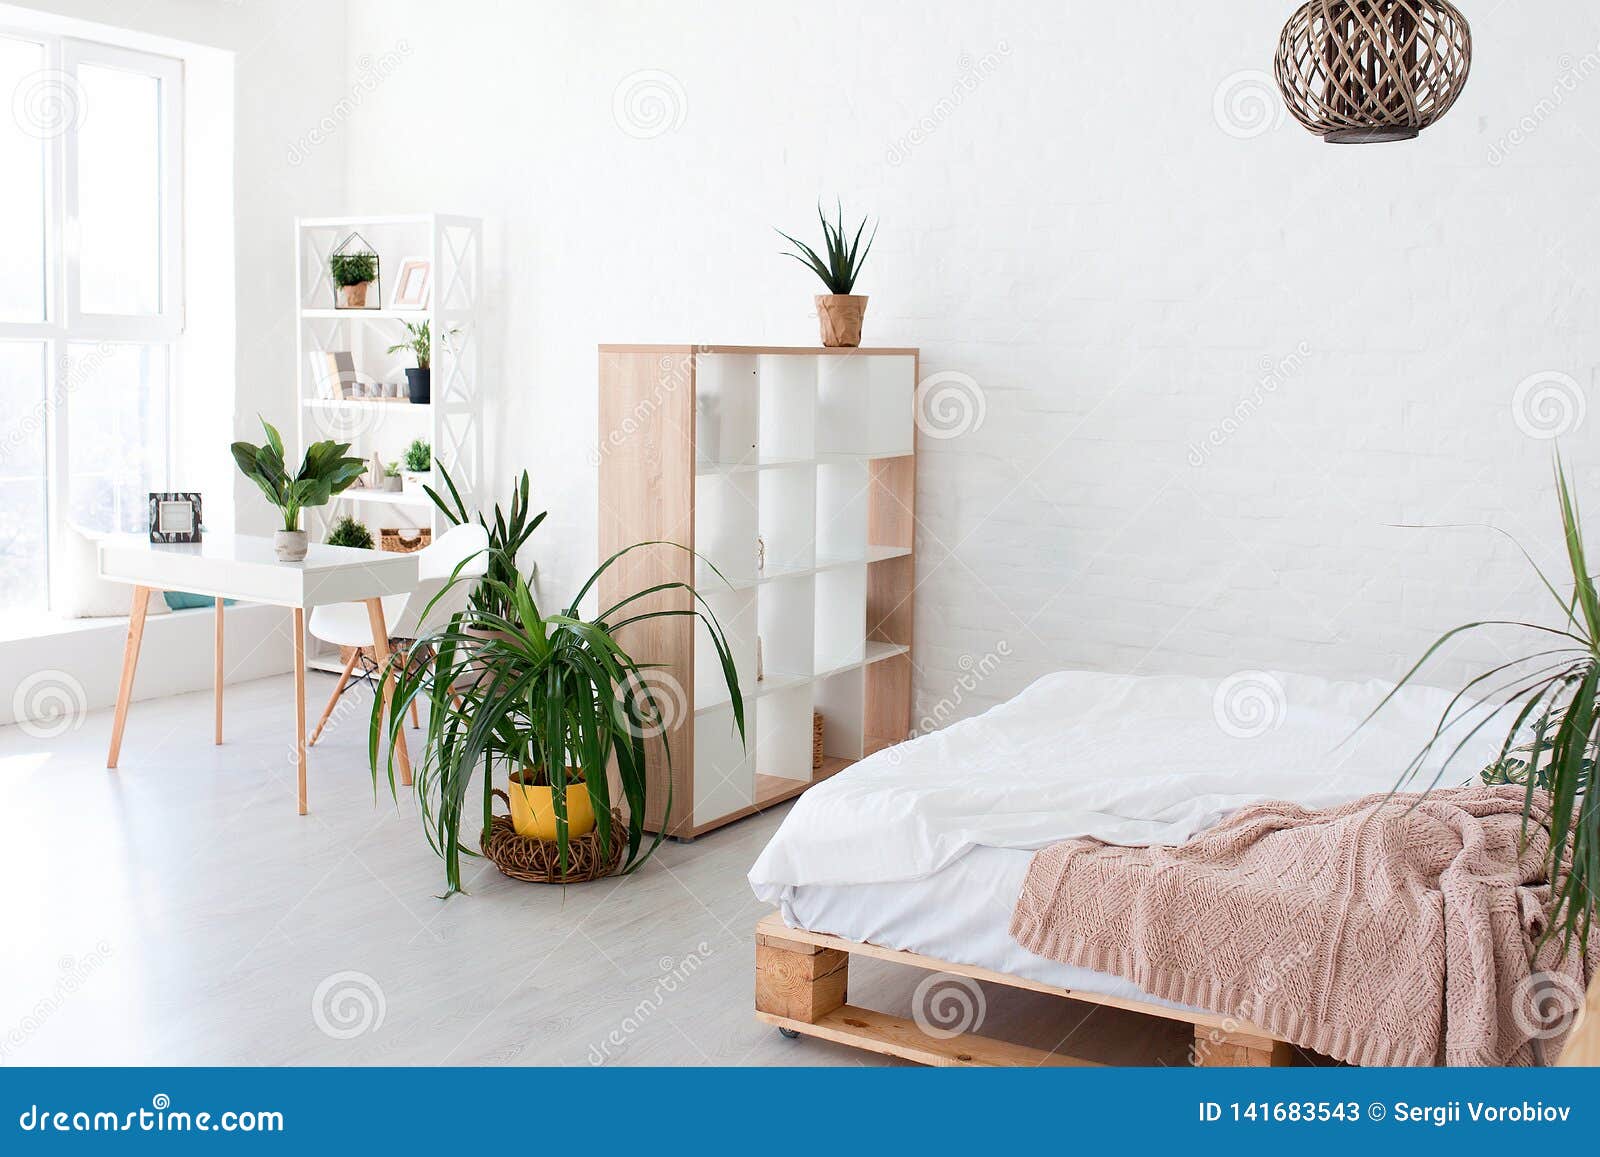 Cozy Interior Design Of Modern Studio Apartment In Scandinavian